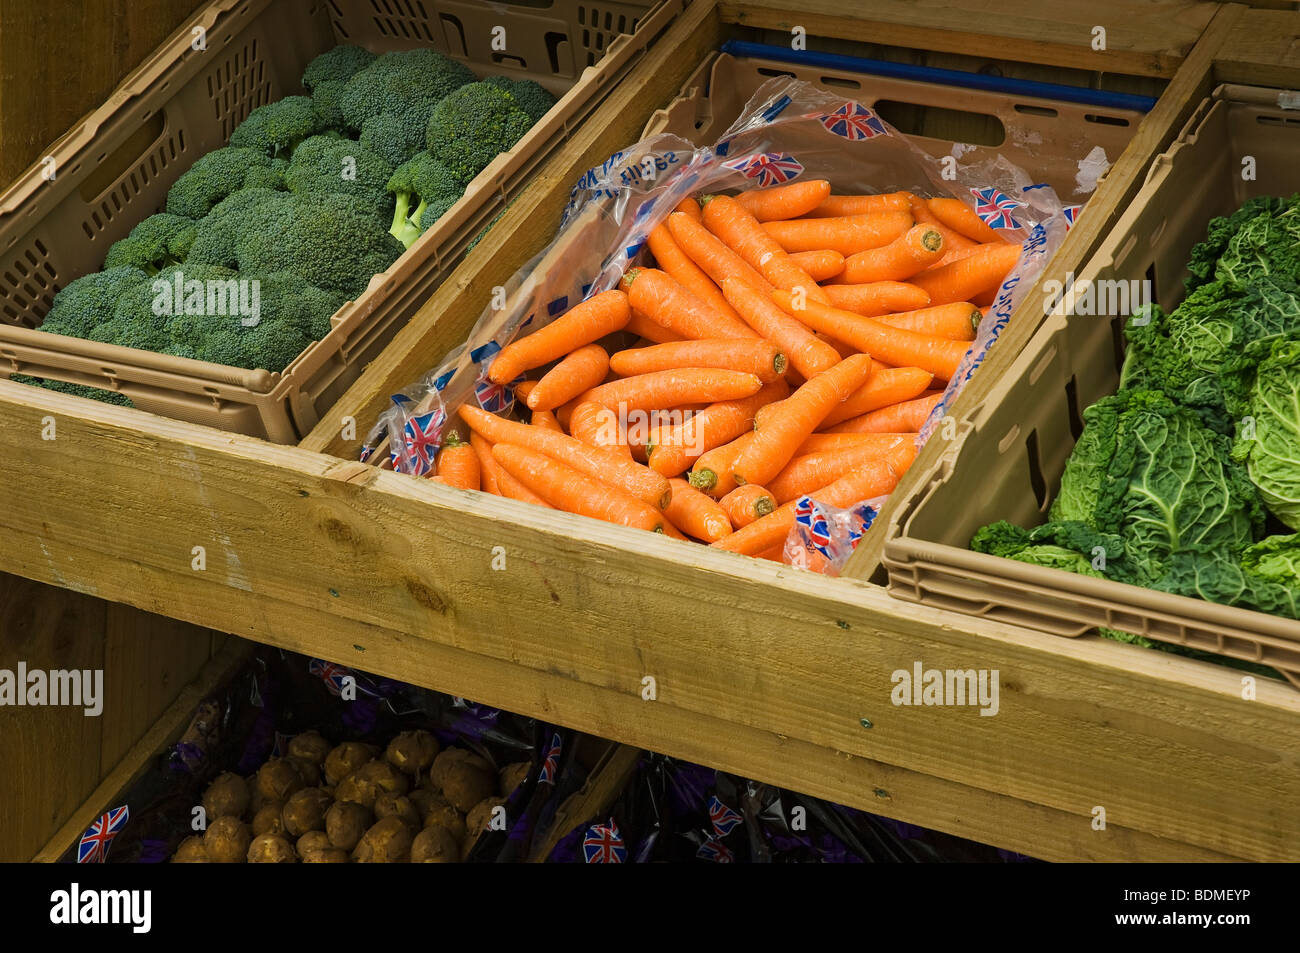 Légumes frais légumes à vendre North Yorkshire Angleterre Royaume-Uni Royaume-Uni Grande-Bretagne Banque D'Images